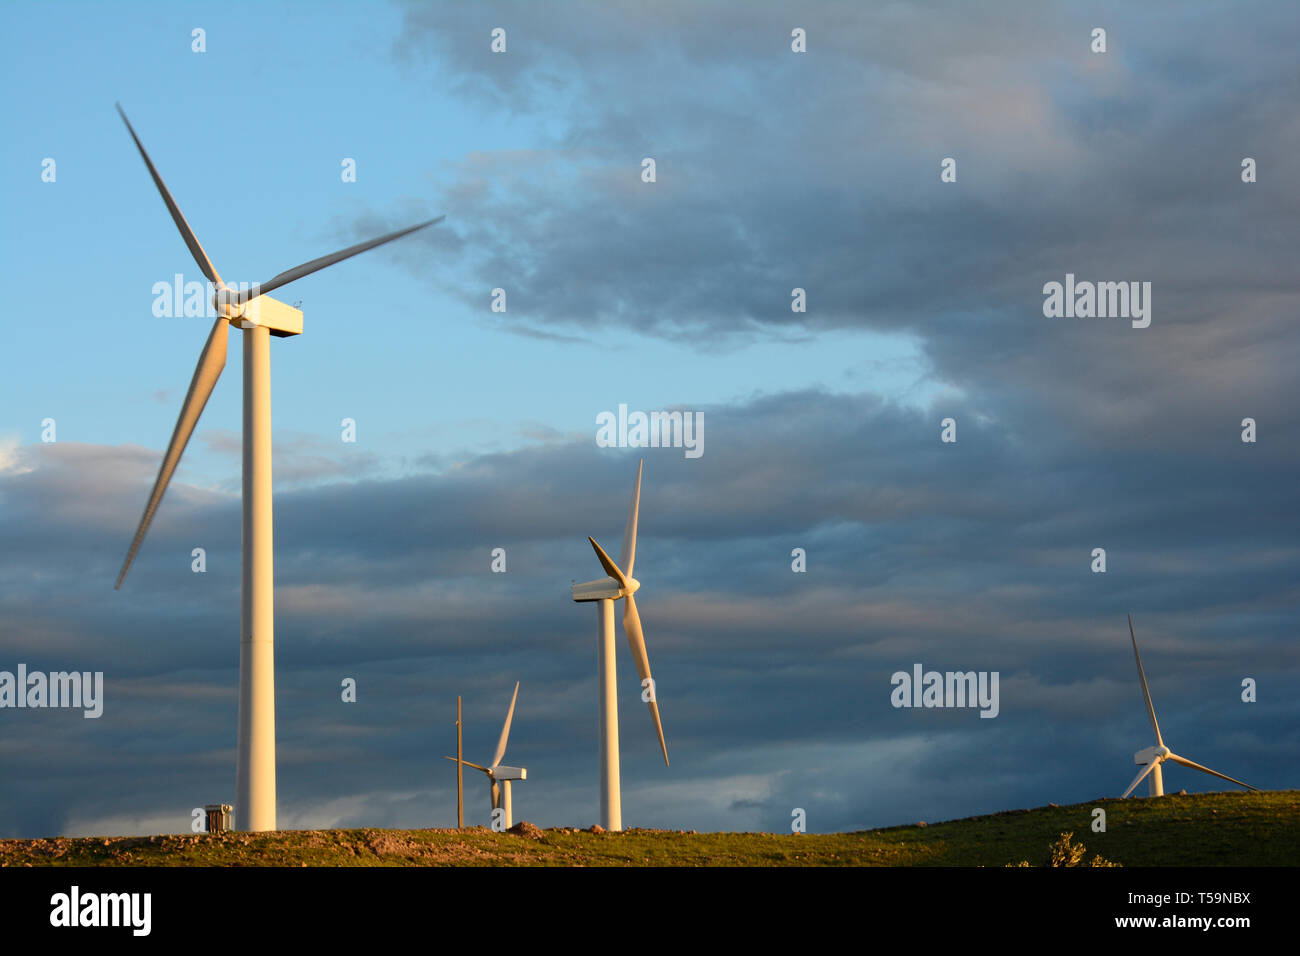 L'énergie éolienne éoliennes ferme à la lumière d'or en face de ciel nuageux, la production d'électricité respectueuse de l'environnement Banque D'Images